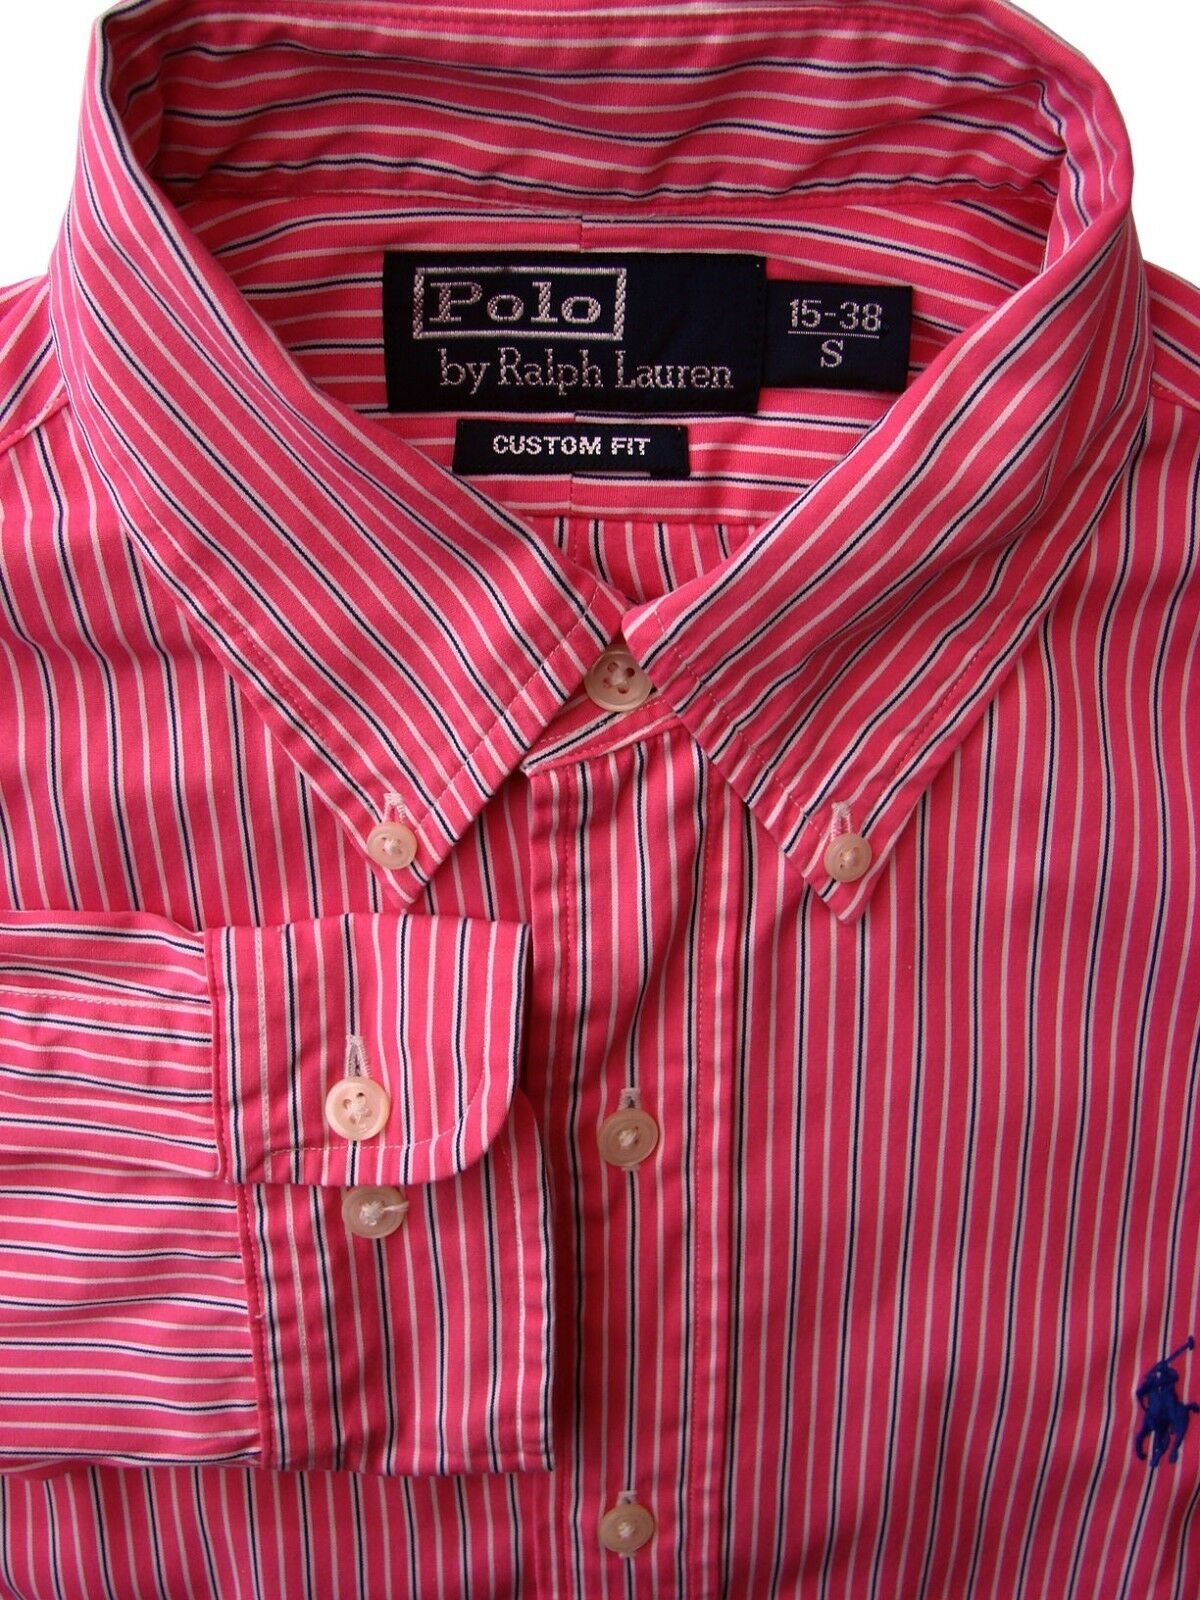 RALPH LAUREN POLO Shirt Mens 15 S Pink - Black & White Stripes CUSTOM FIT -  Brandinity